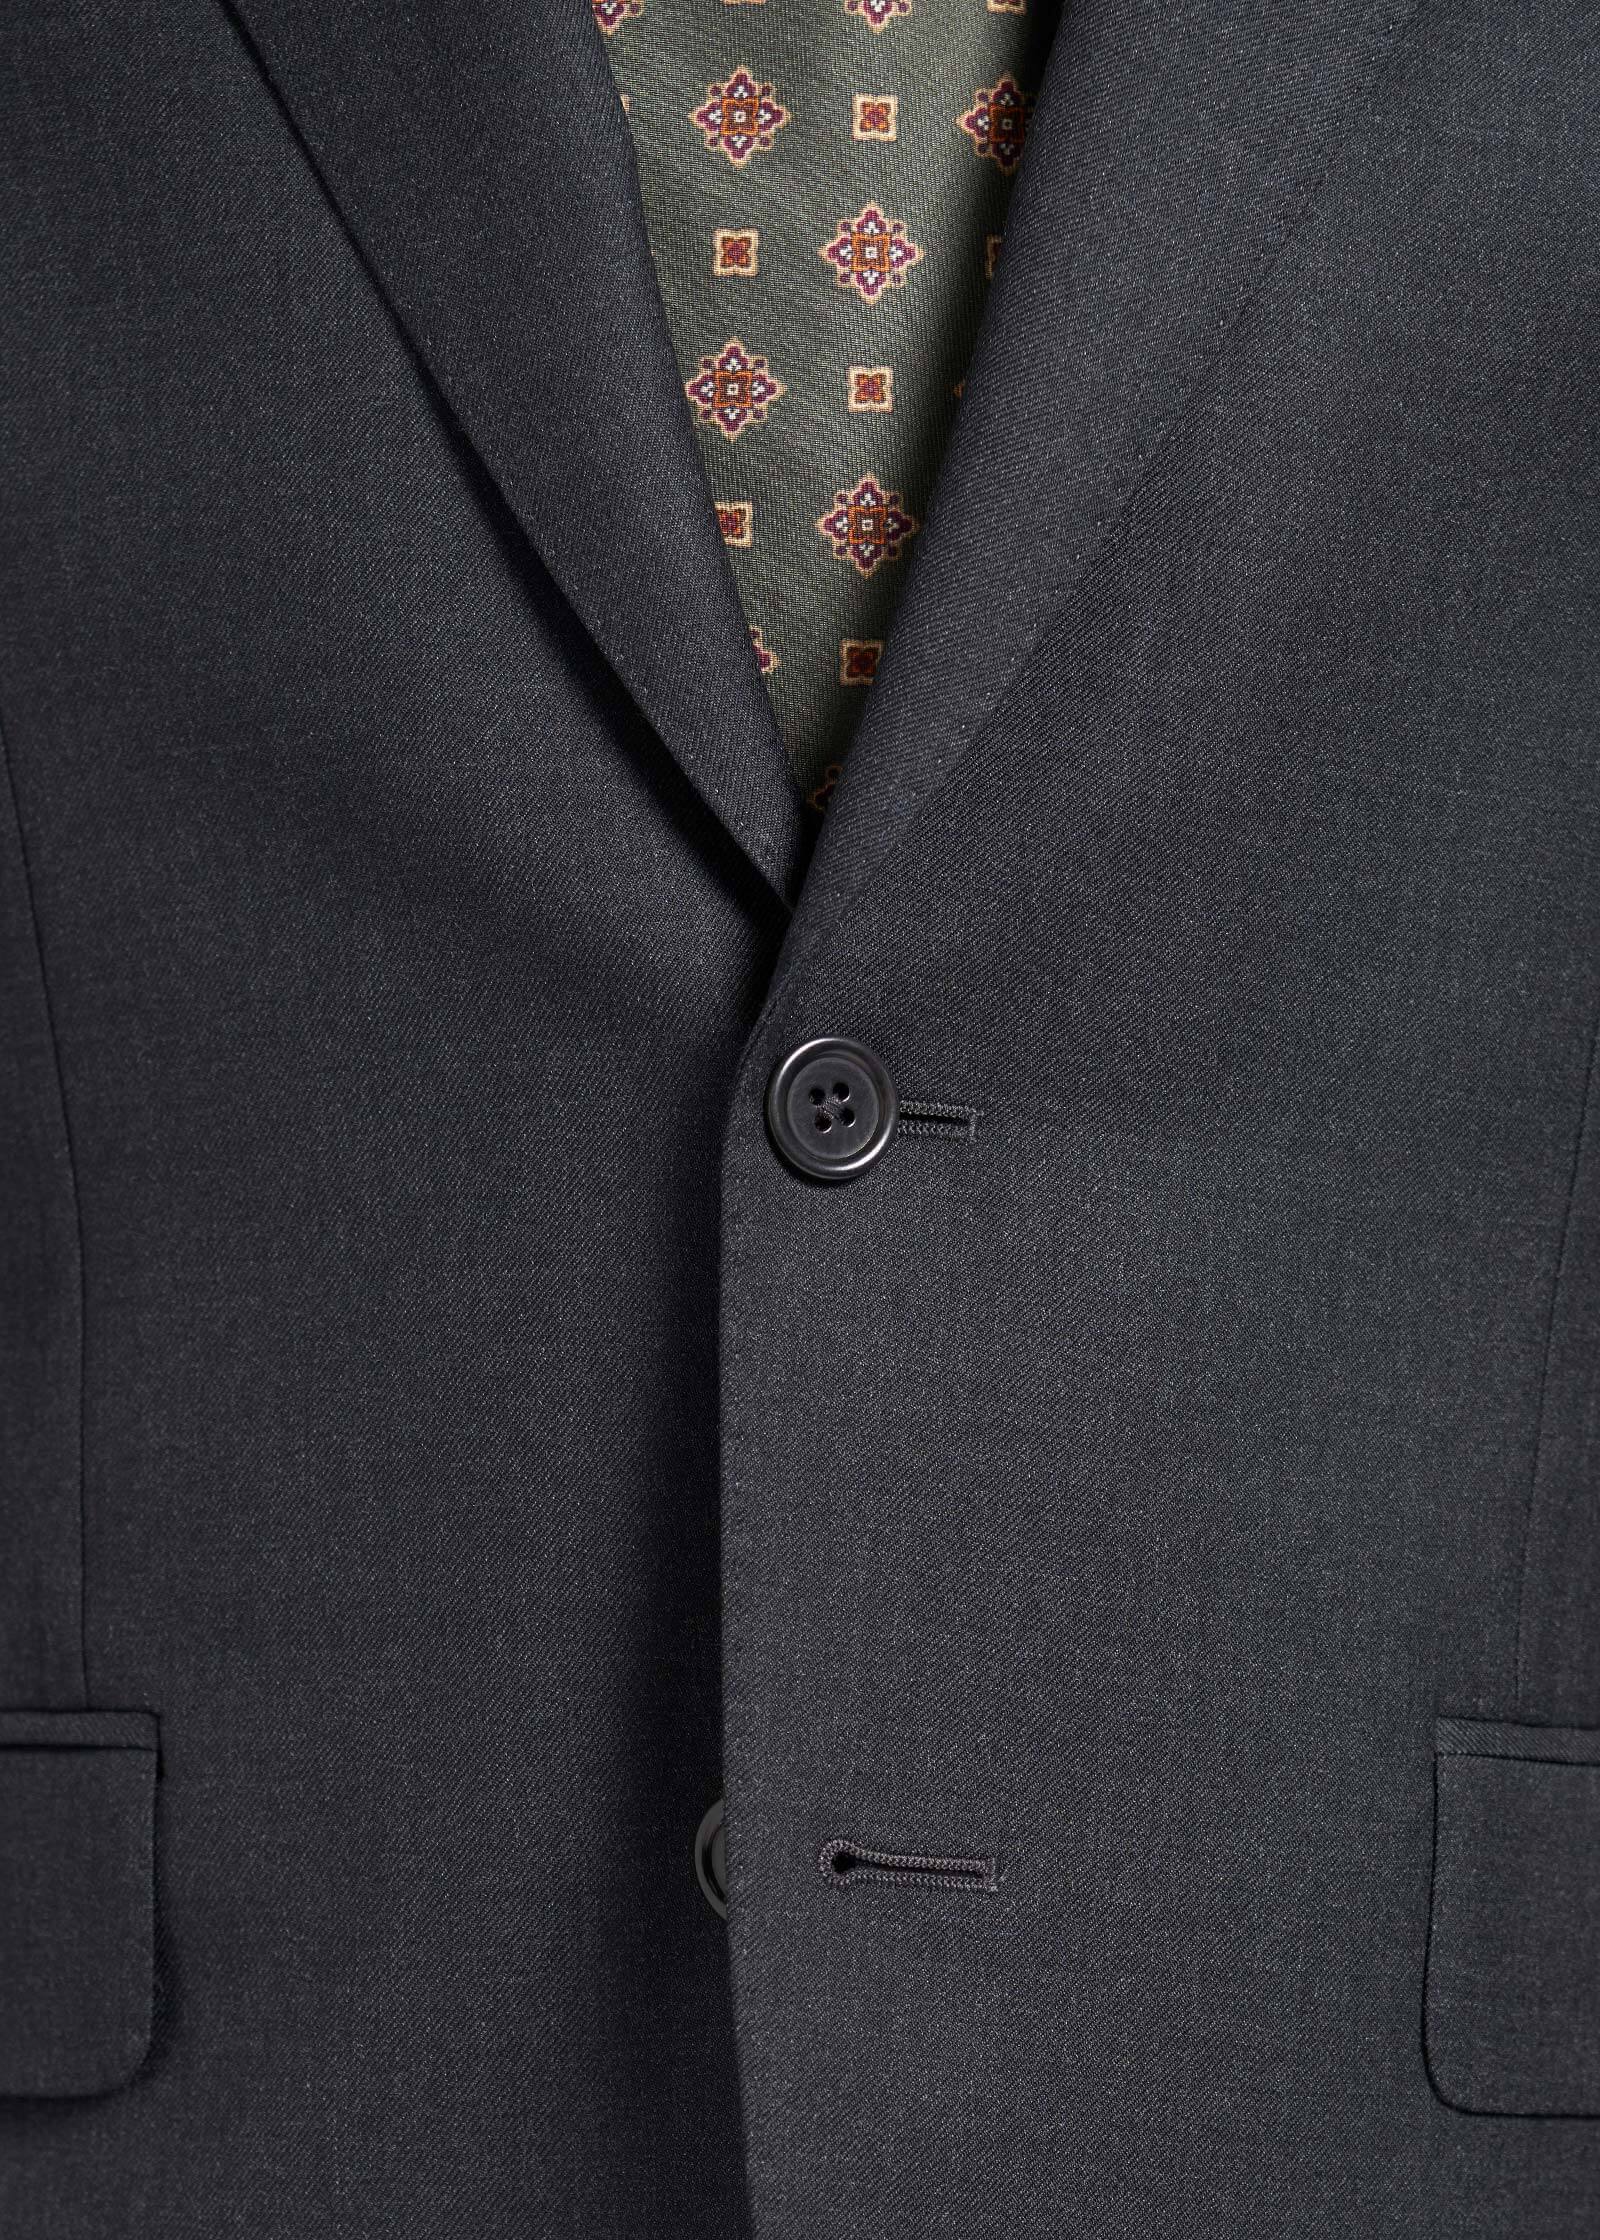 Charcoal-S120's-Mond-Custom-Suit-Details-Close-up